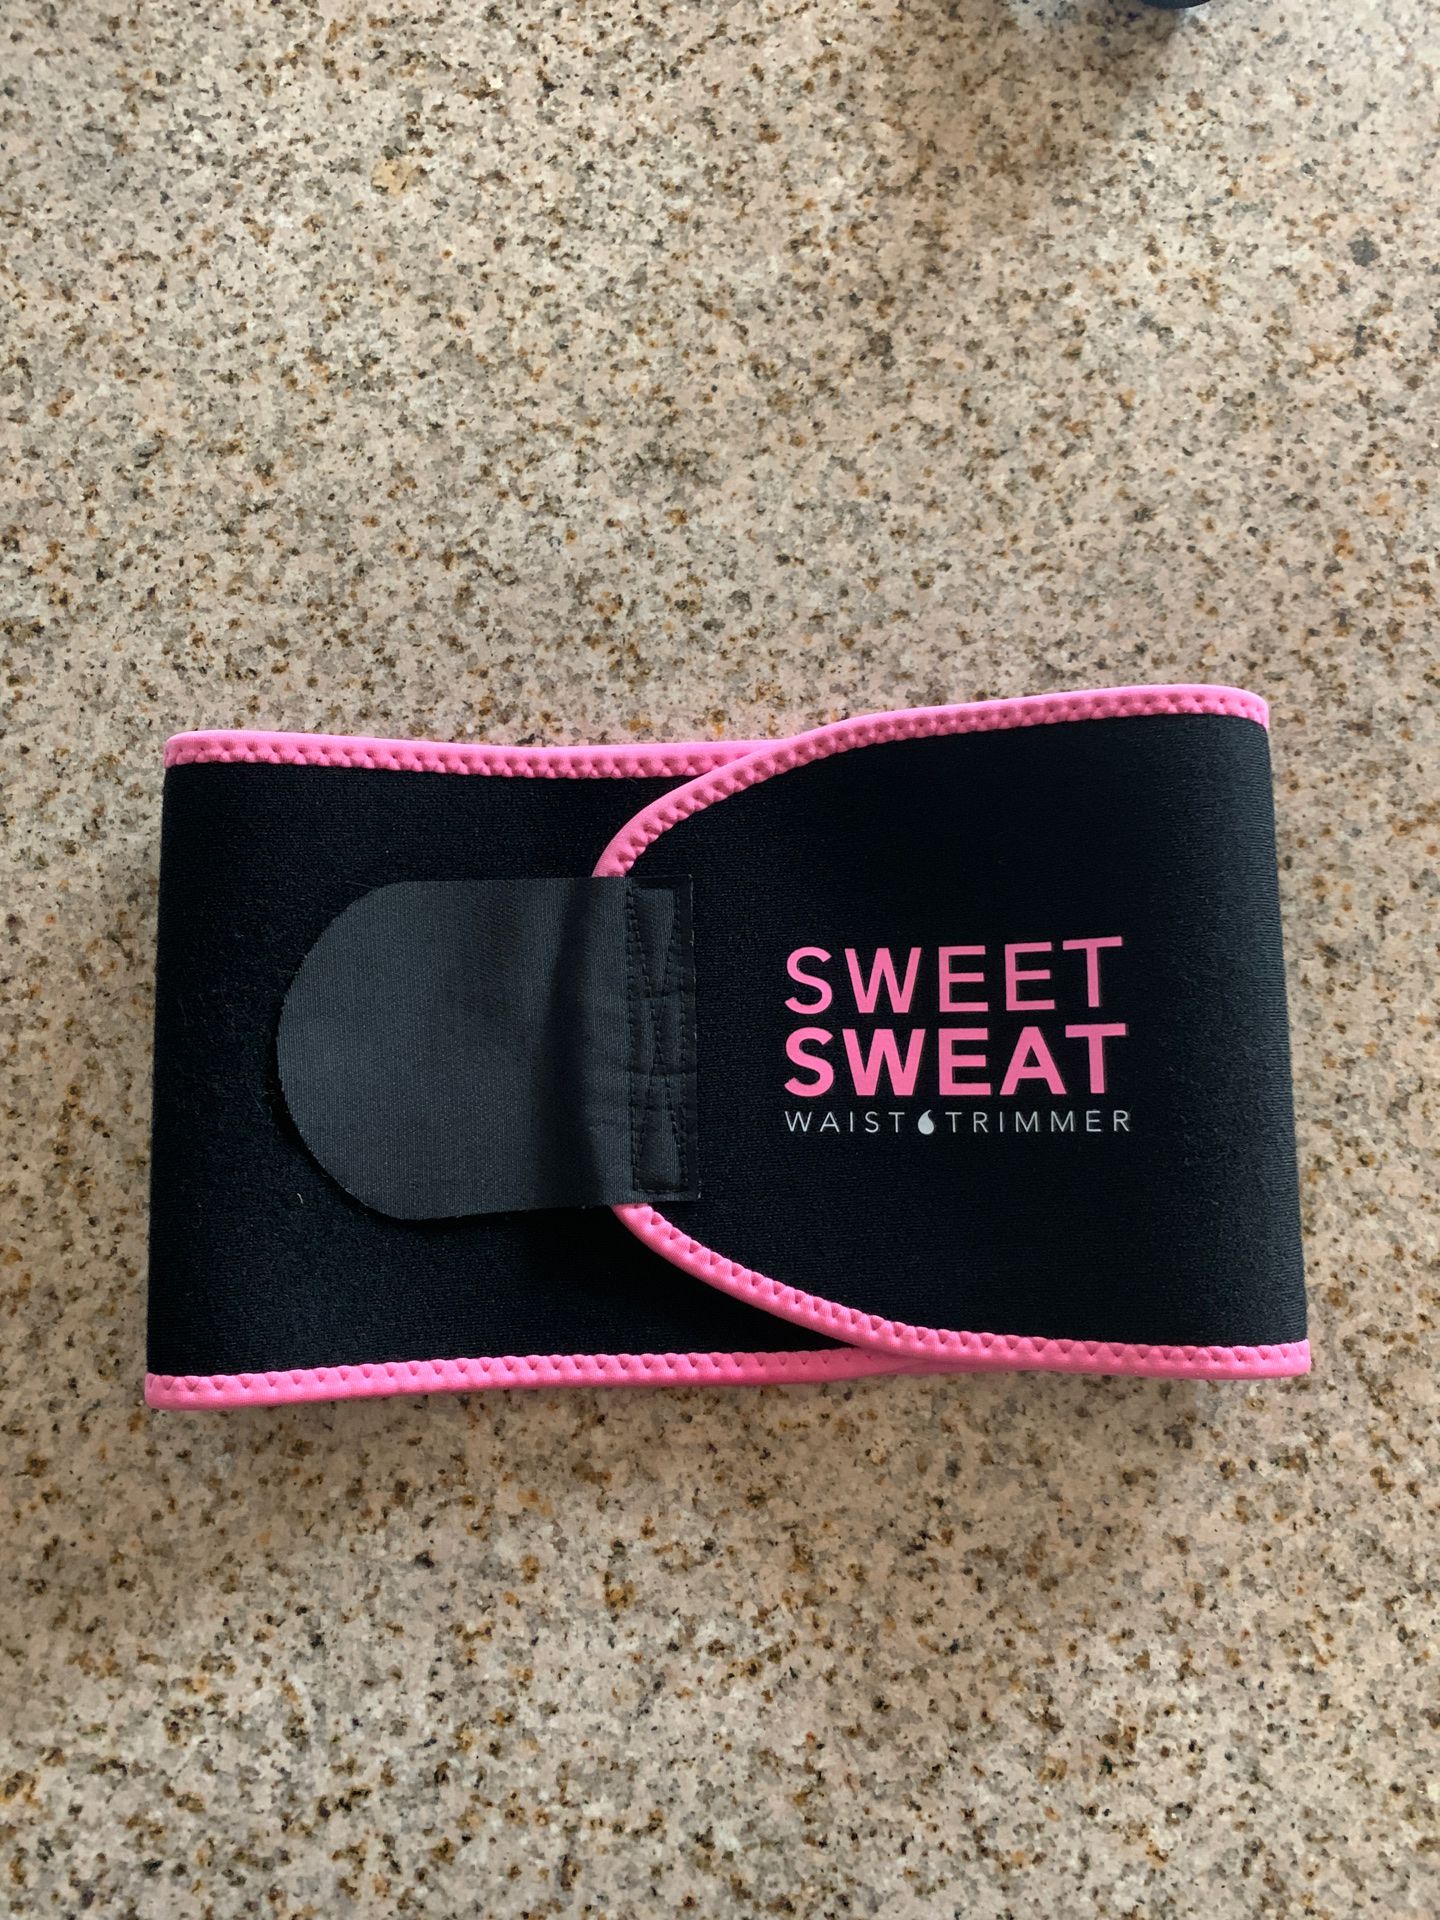 Sweet sweat band